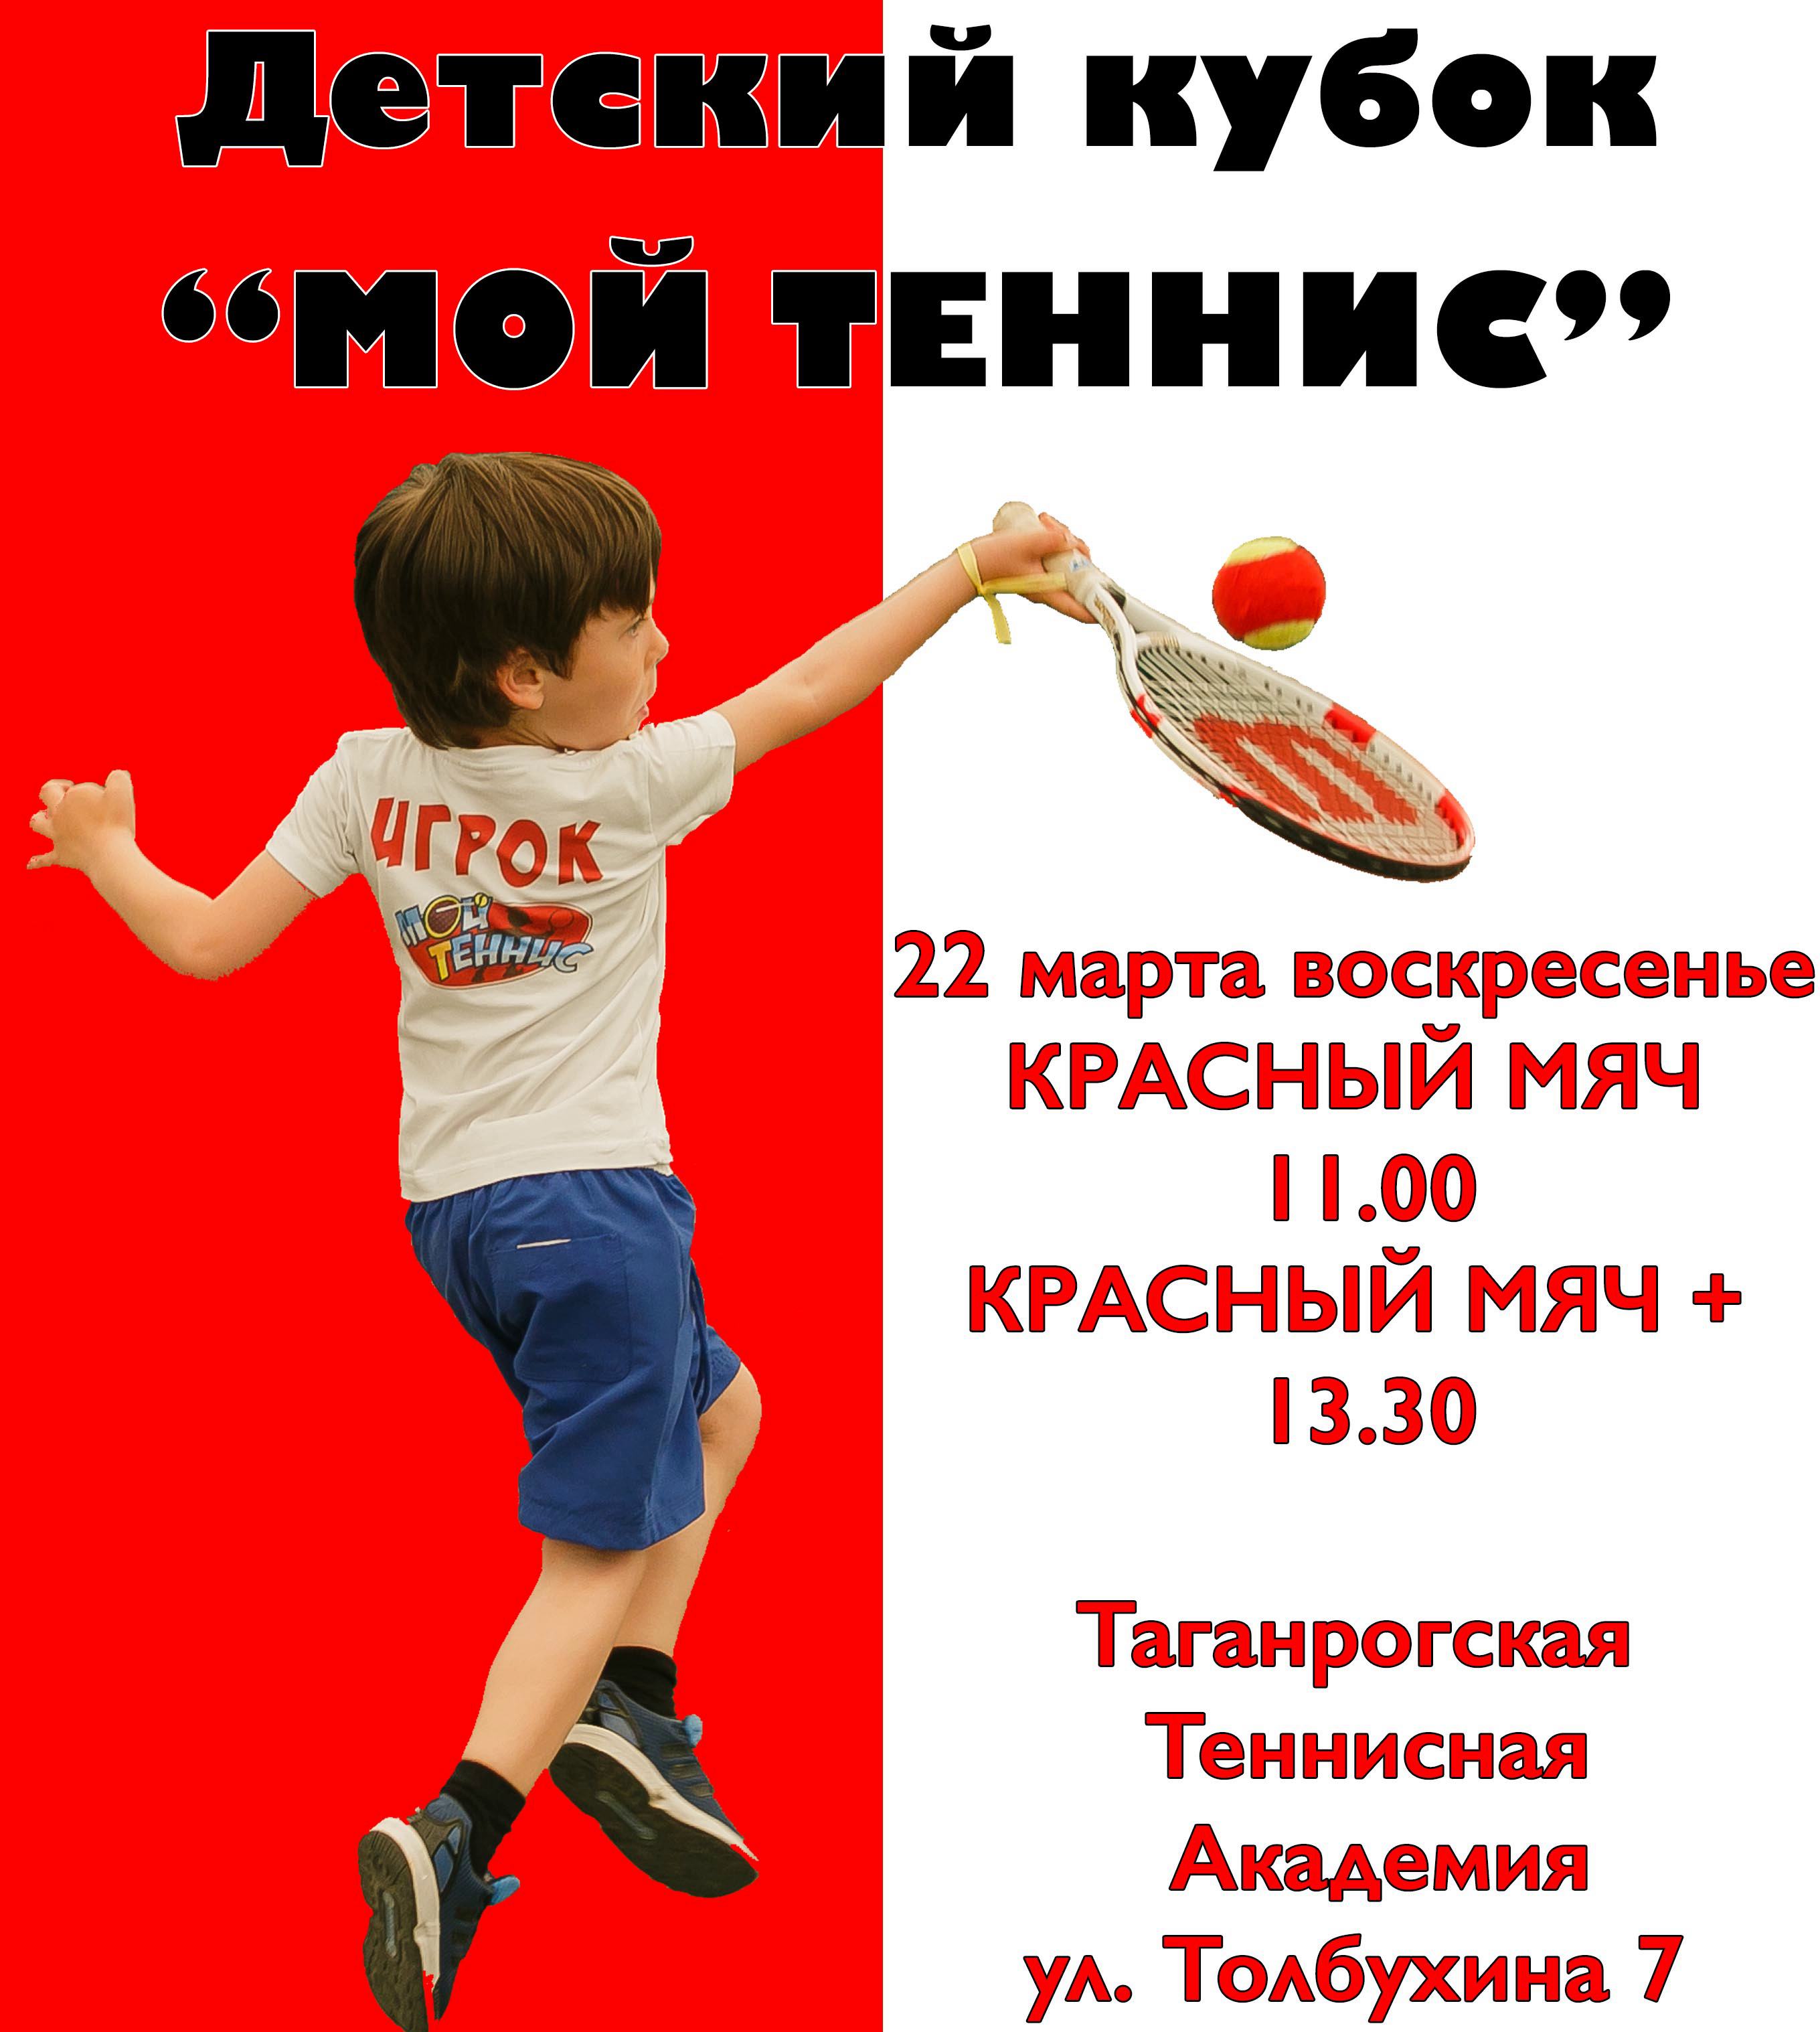 Календарь и расписание соревнований по теннису, Ростовская область, в марте  2020 ☆ e-Champs